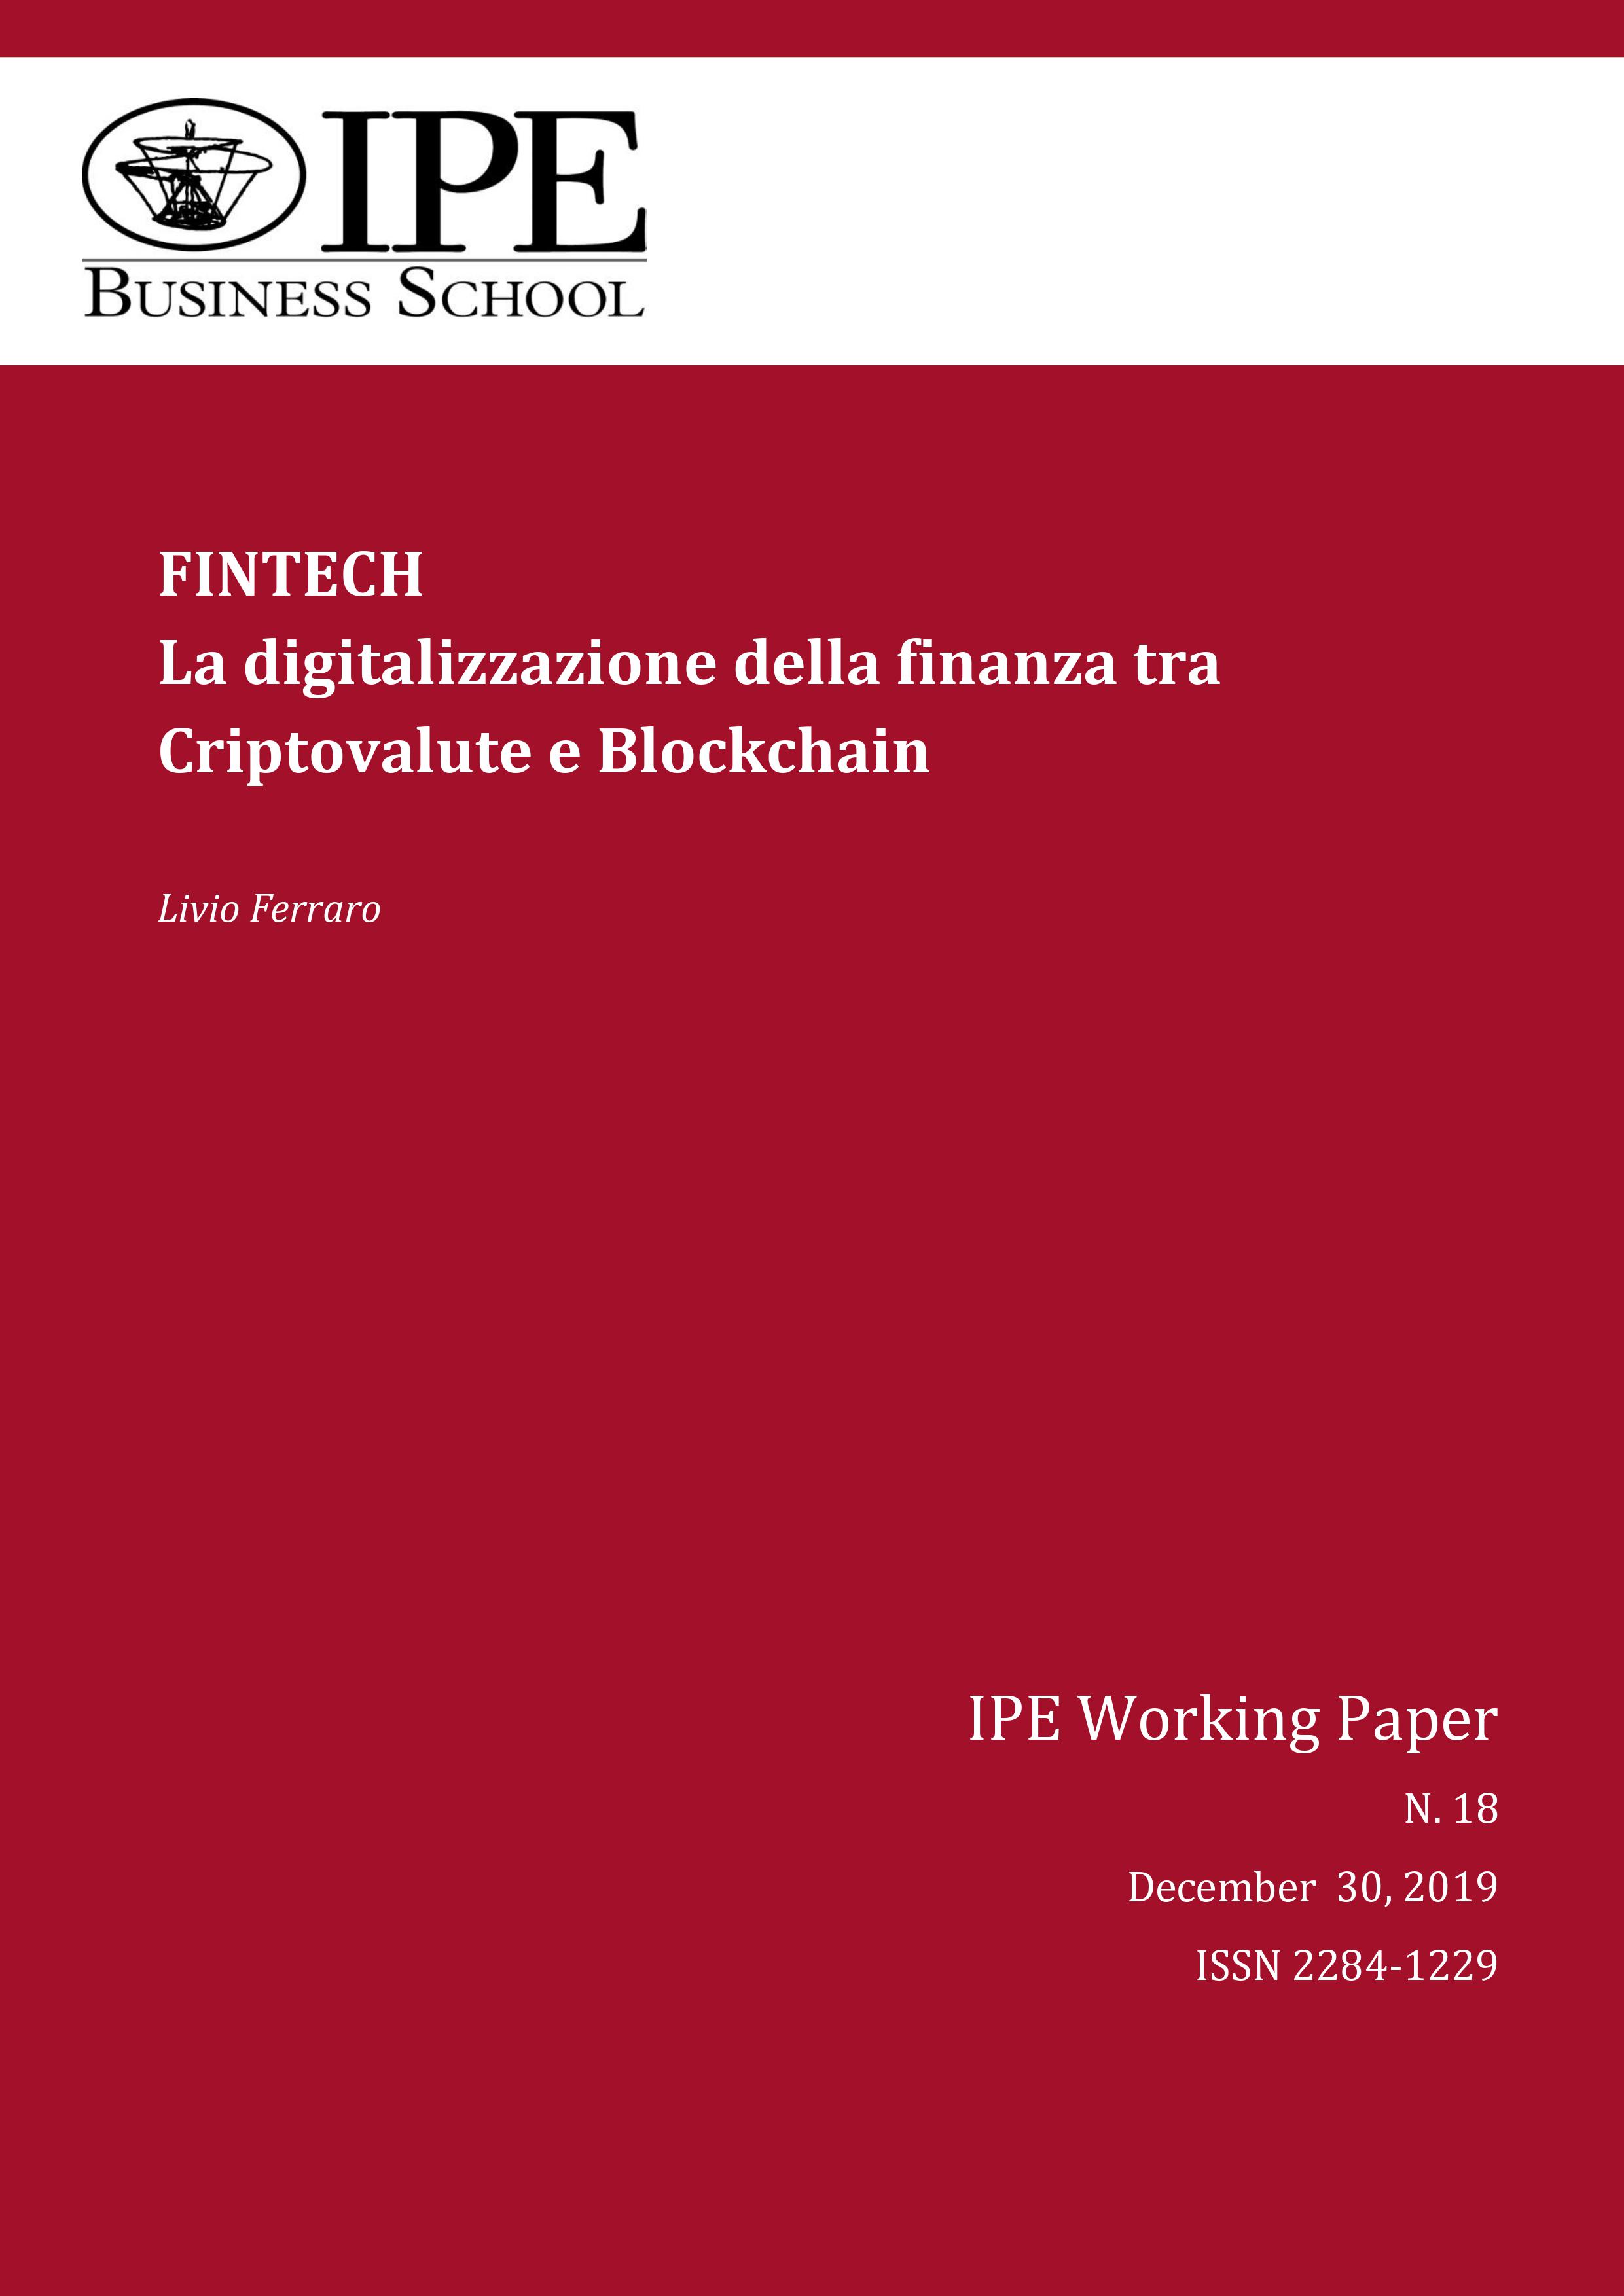 IPE Working Paper N.18/2019